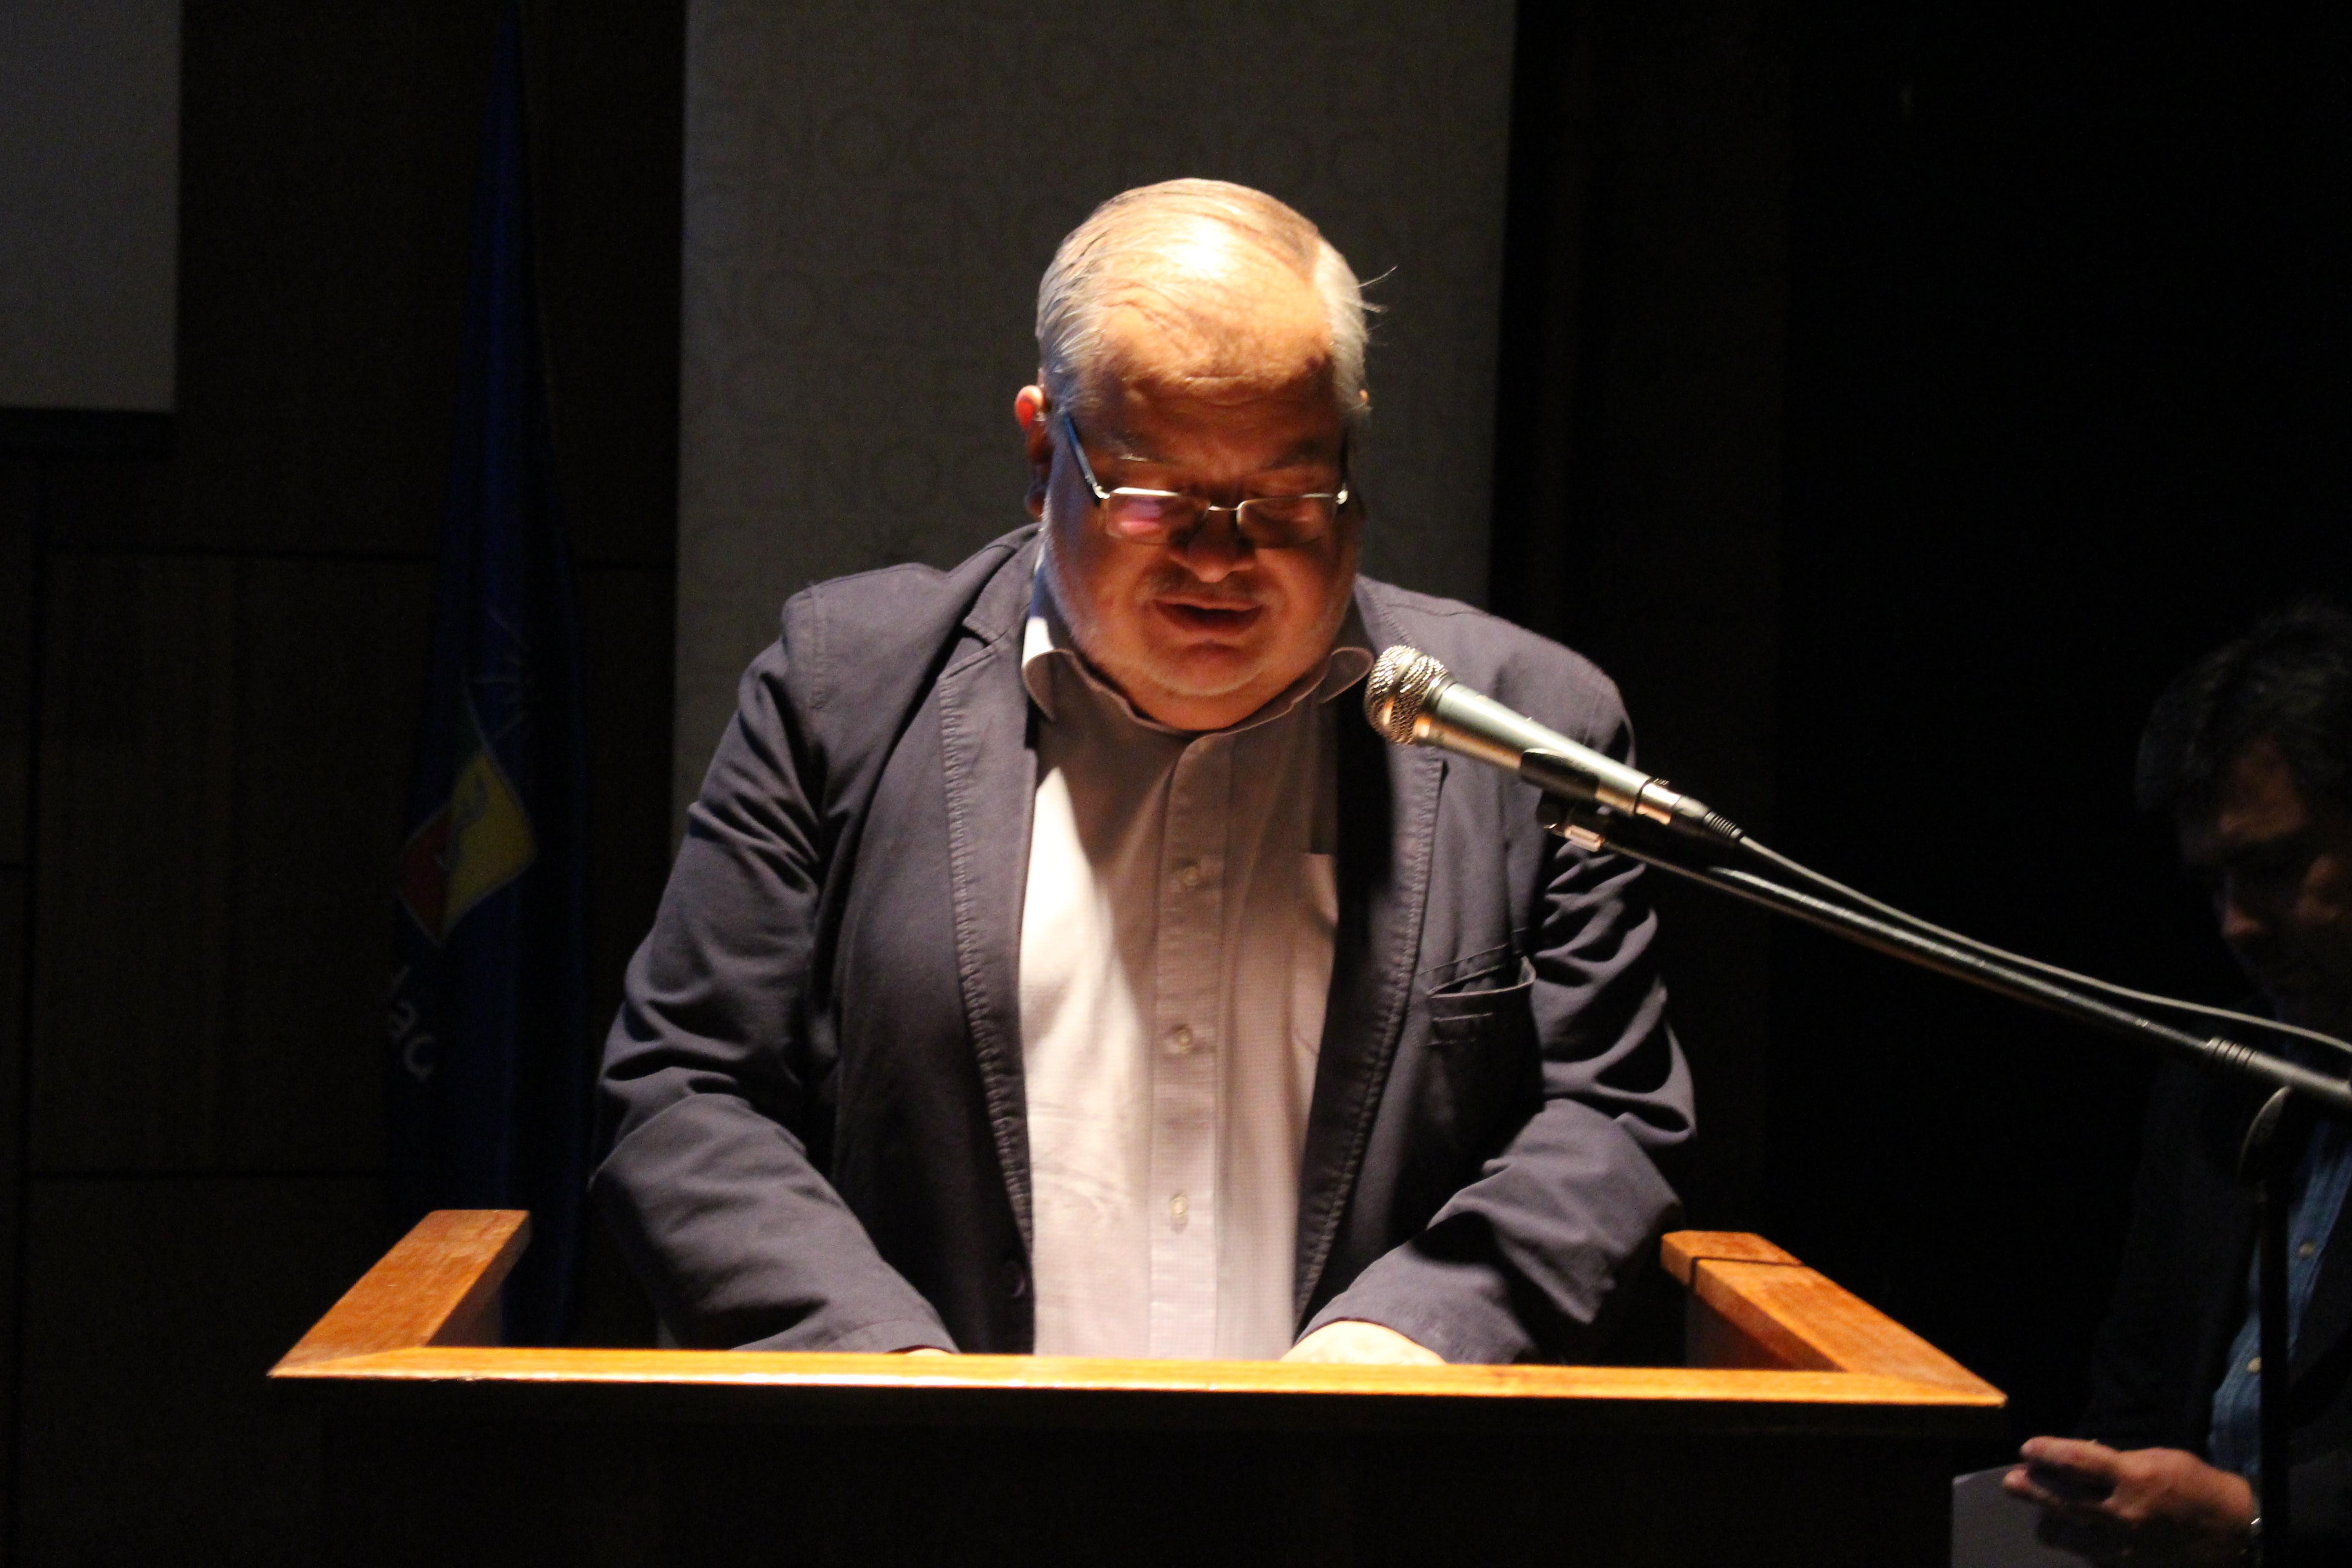 El Director de Extensión y Director de la ENOC también ofreció un discurso durante la ceremonia.